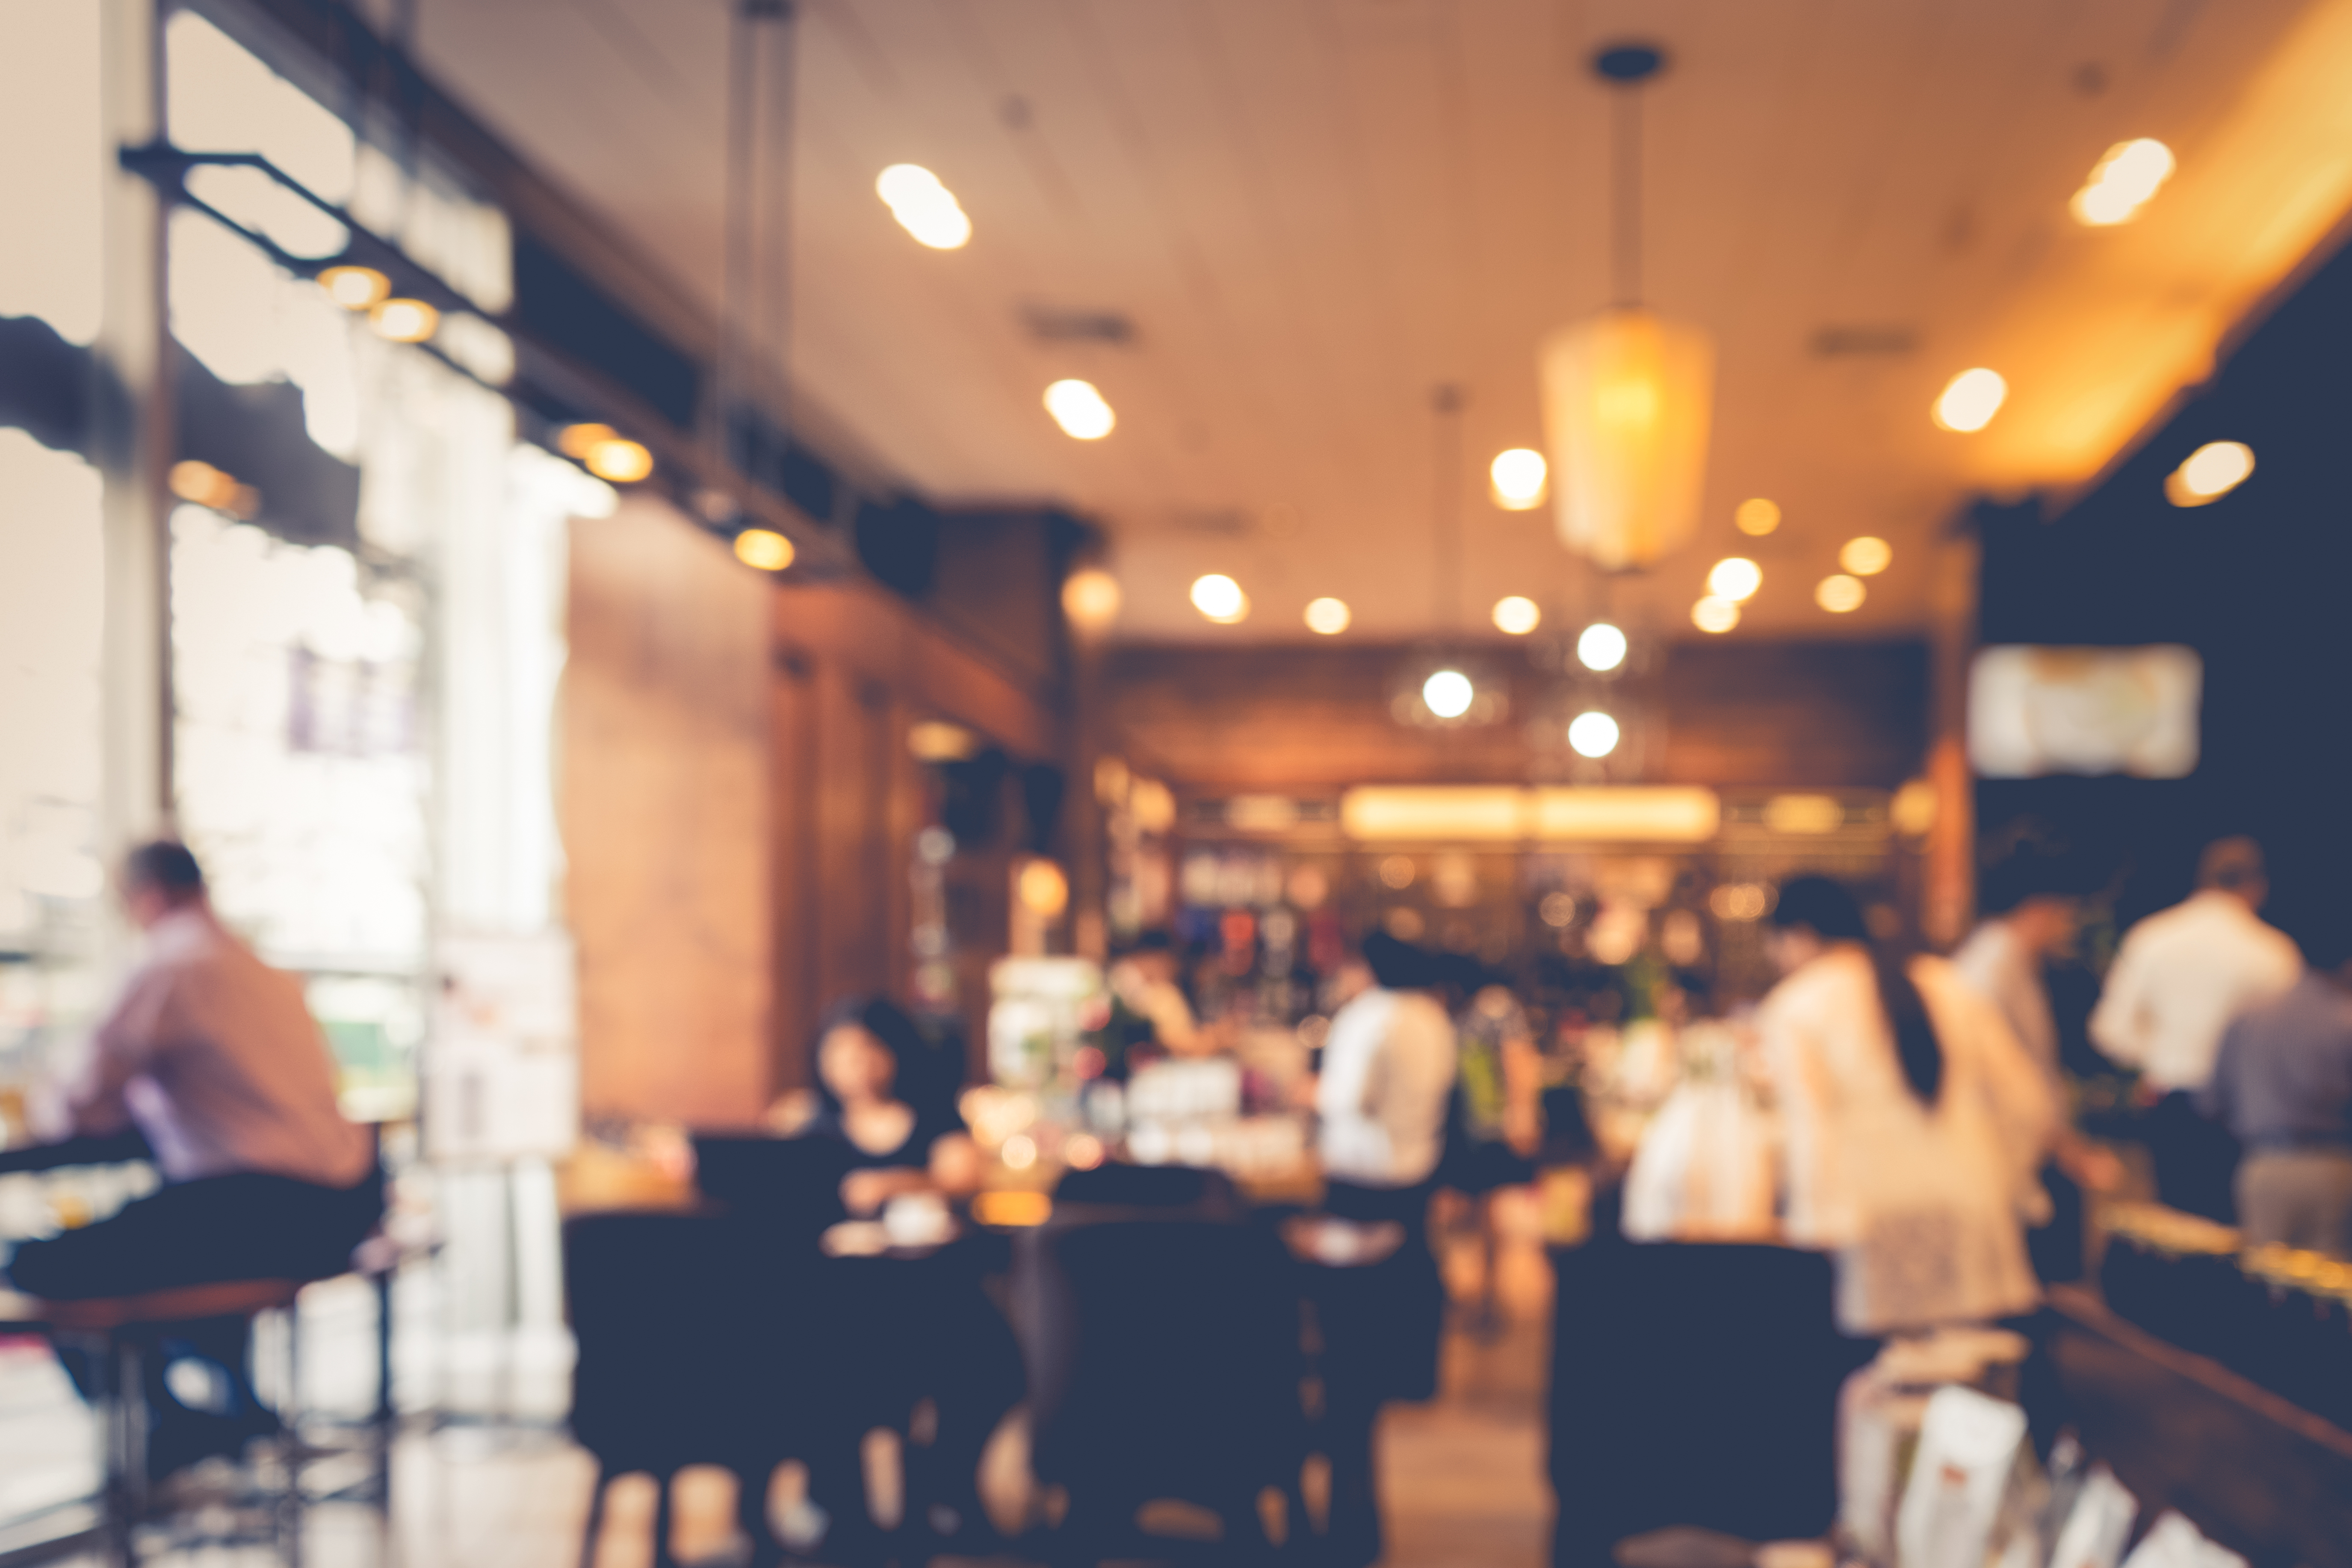 A blur shot of a restaurant | Source: Shutterstock